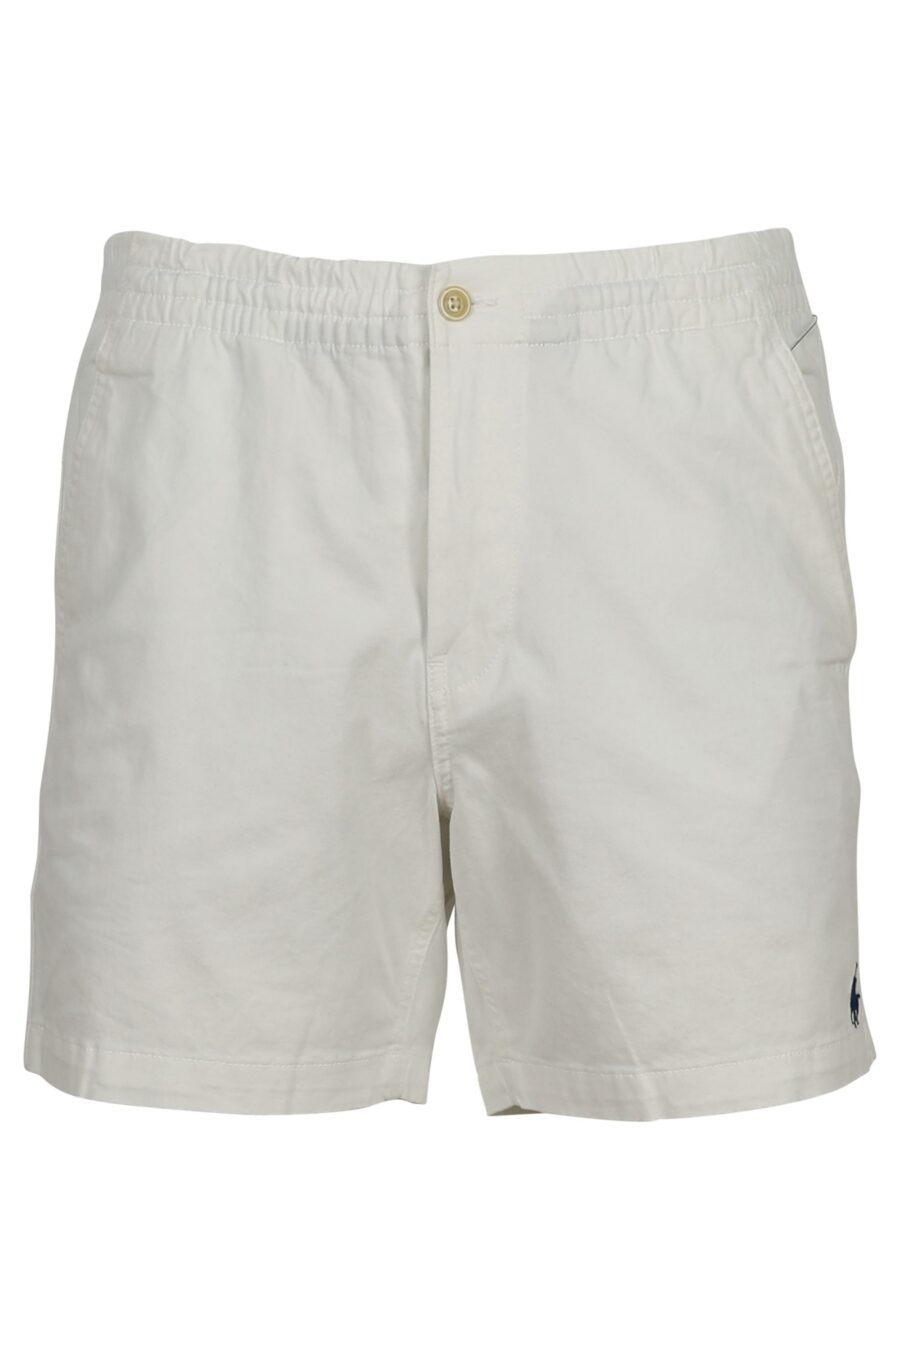 White shorts with mini-logo "polo" - 3614712774080